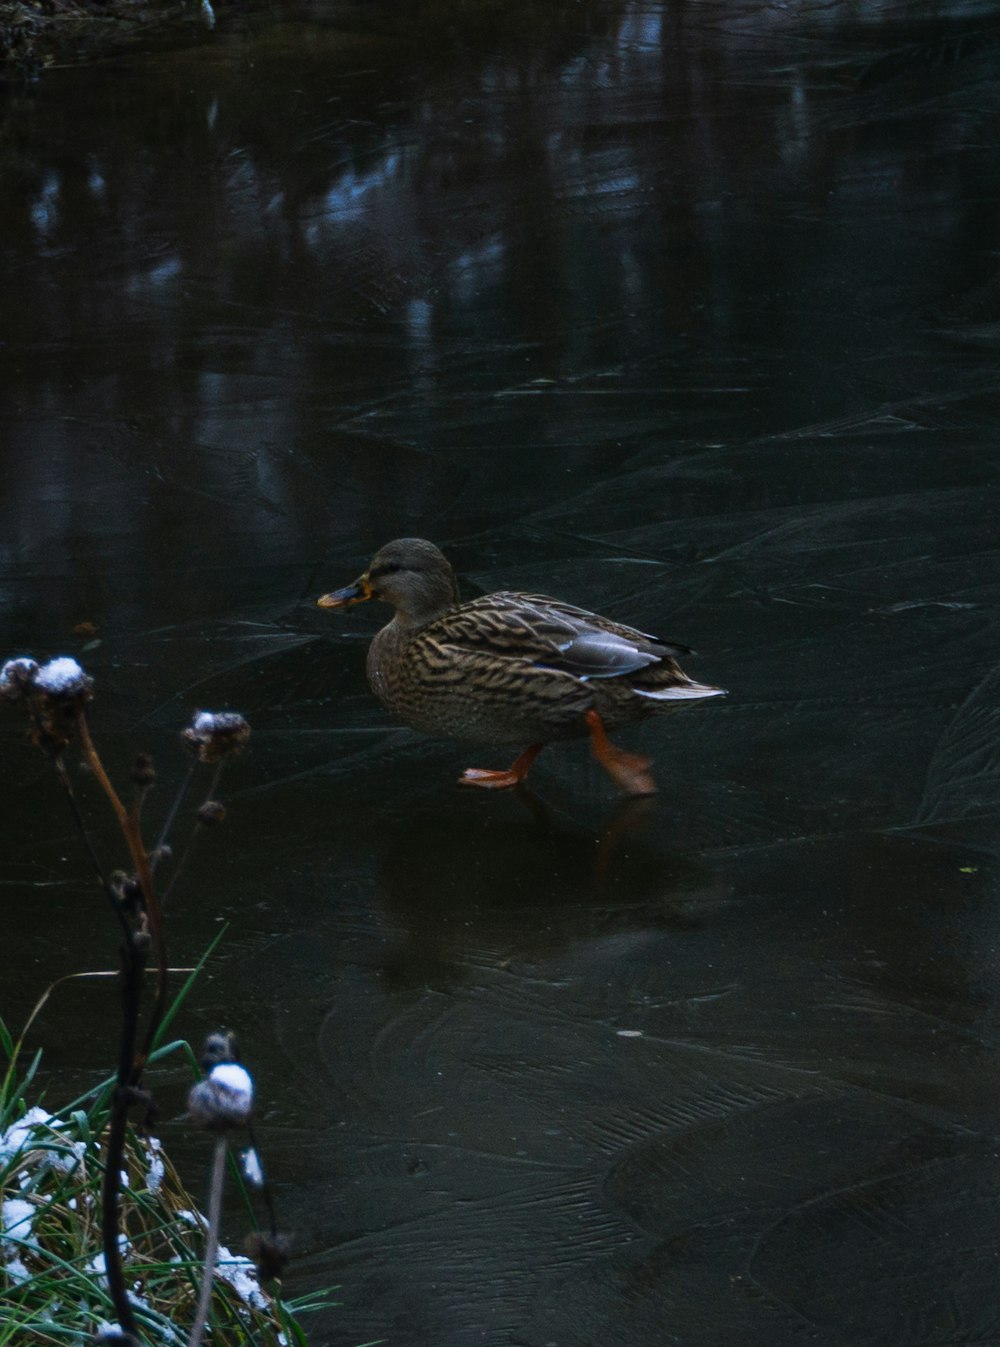 a duck walking in water